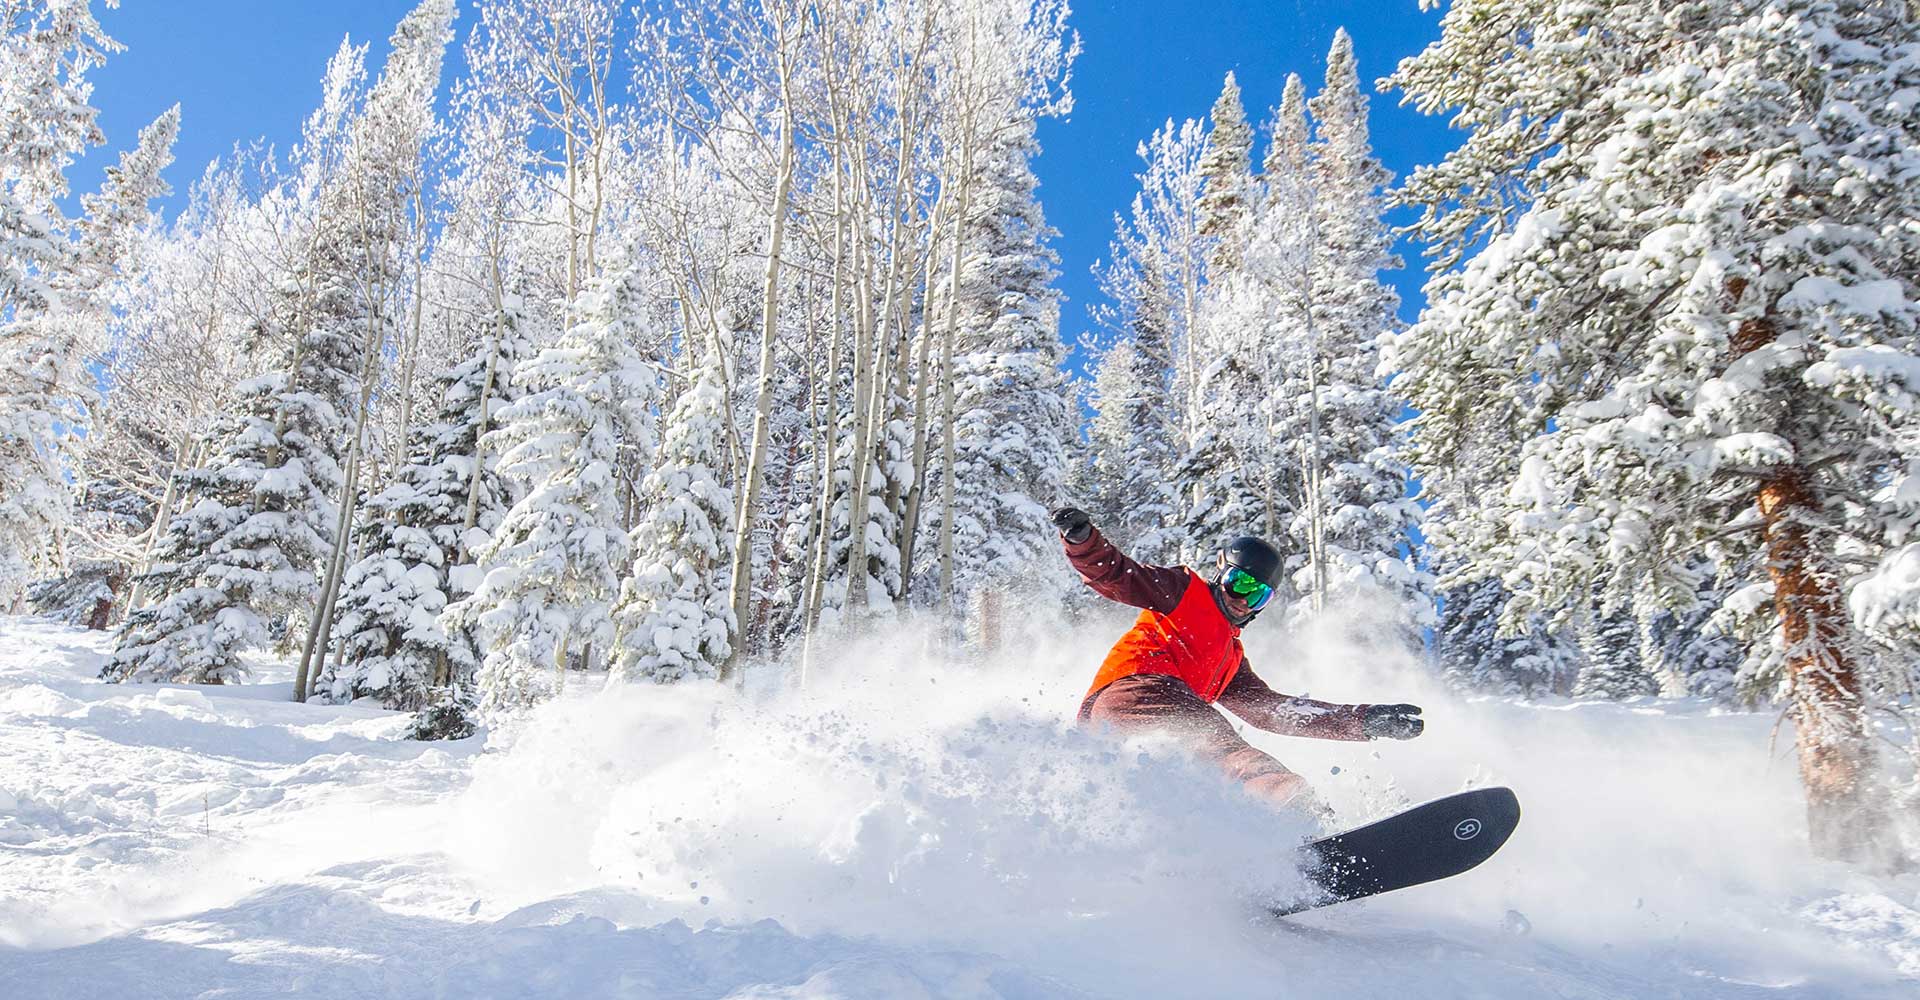 A snowboarder enjoys a tree run at Aspen Snowmass